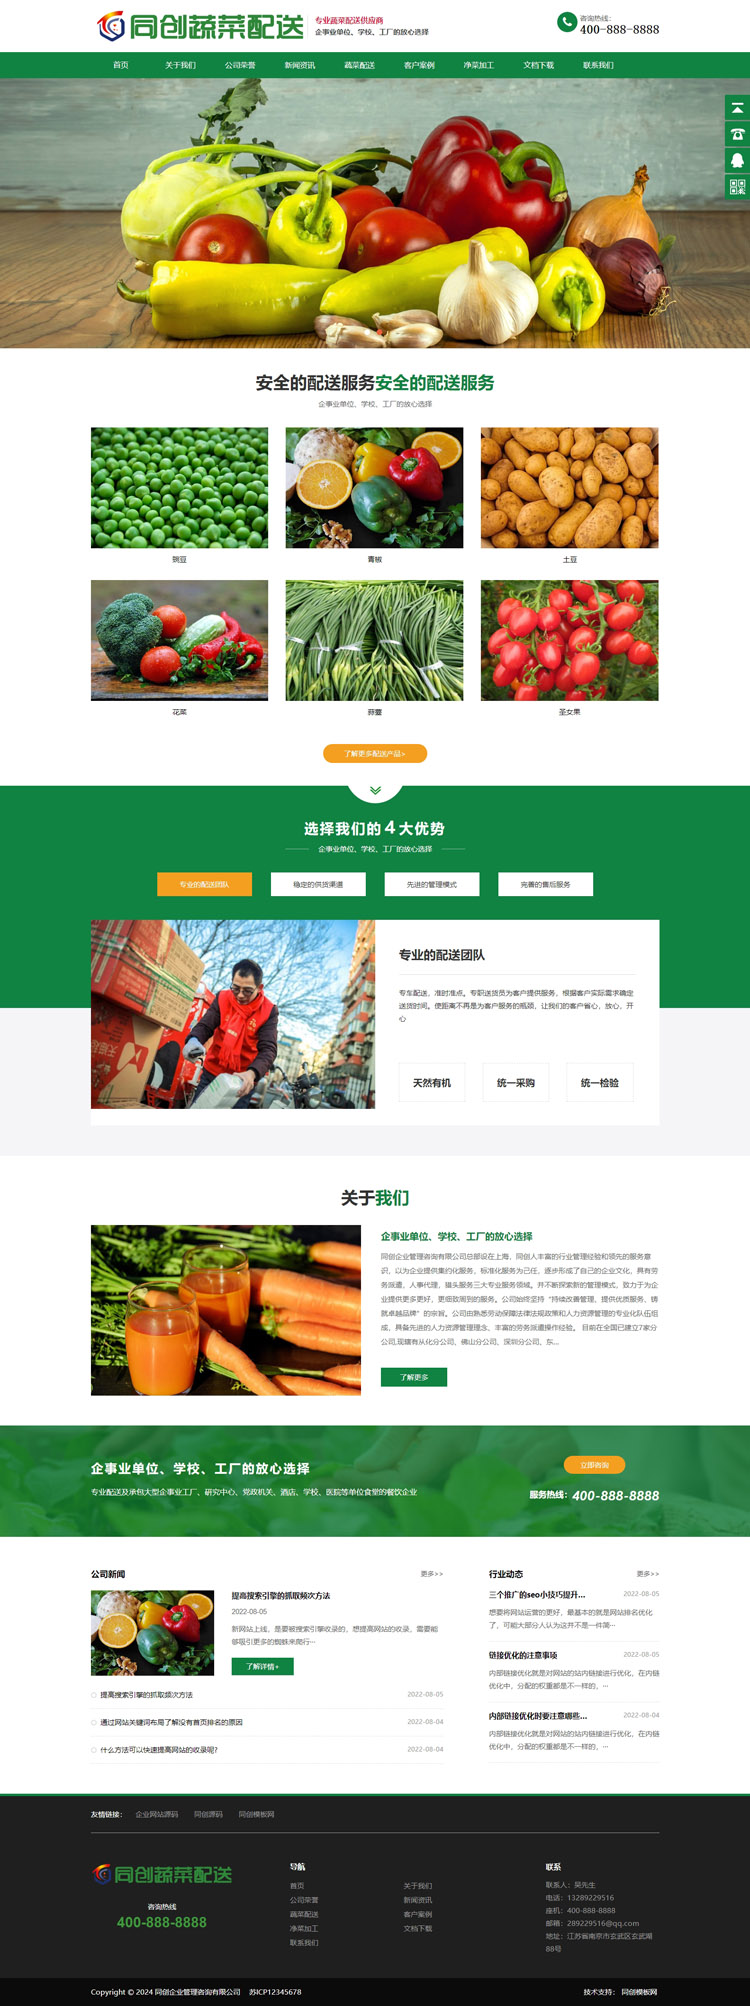 绿色果蔬配送网站源码模板程序-BY017-2